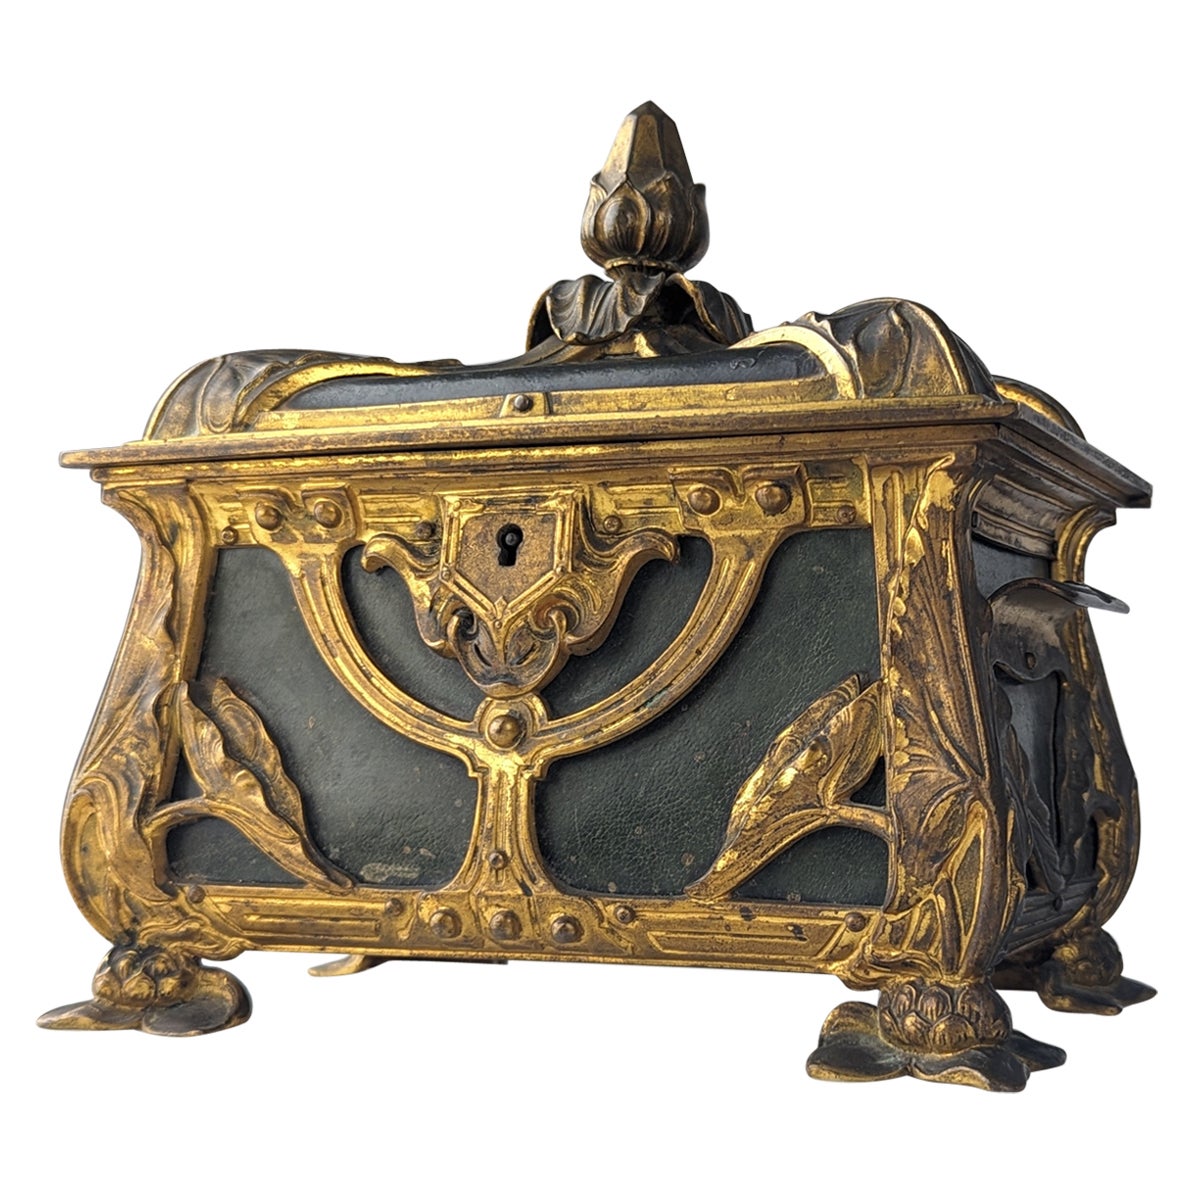 French Art Nouveau bombé jewelry box For Sale